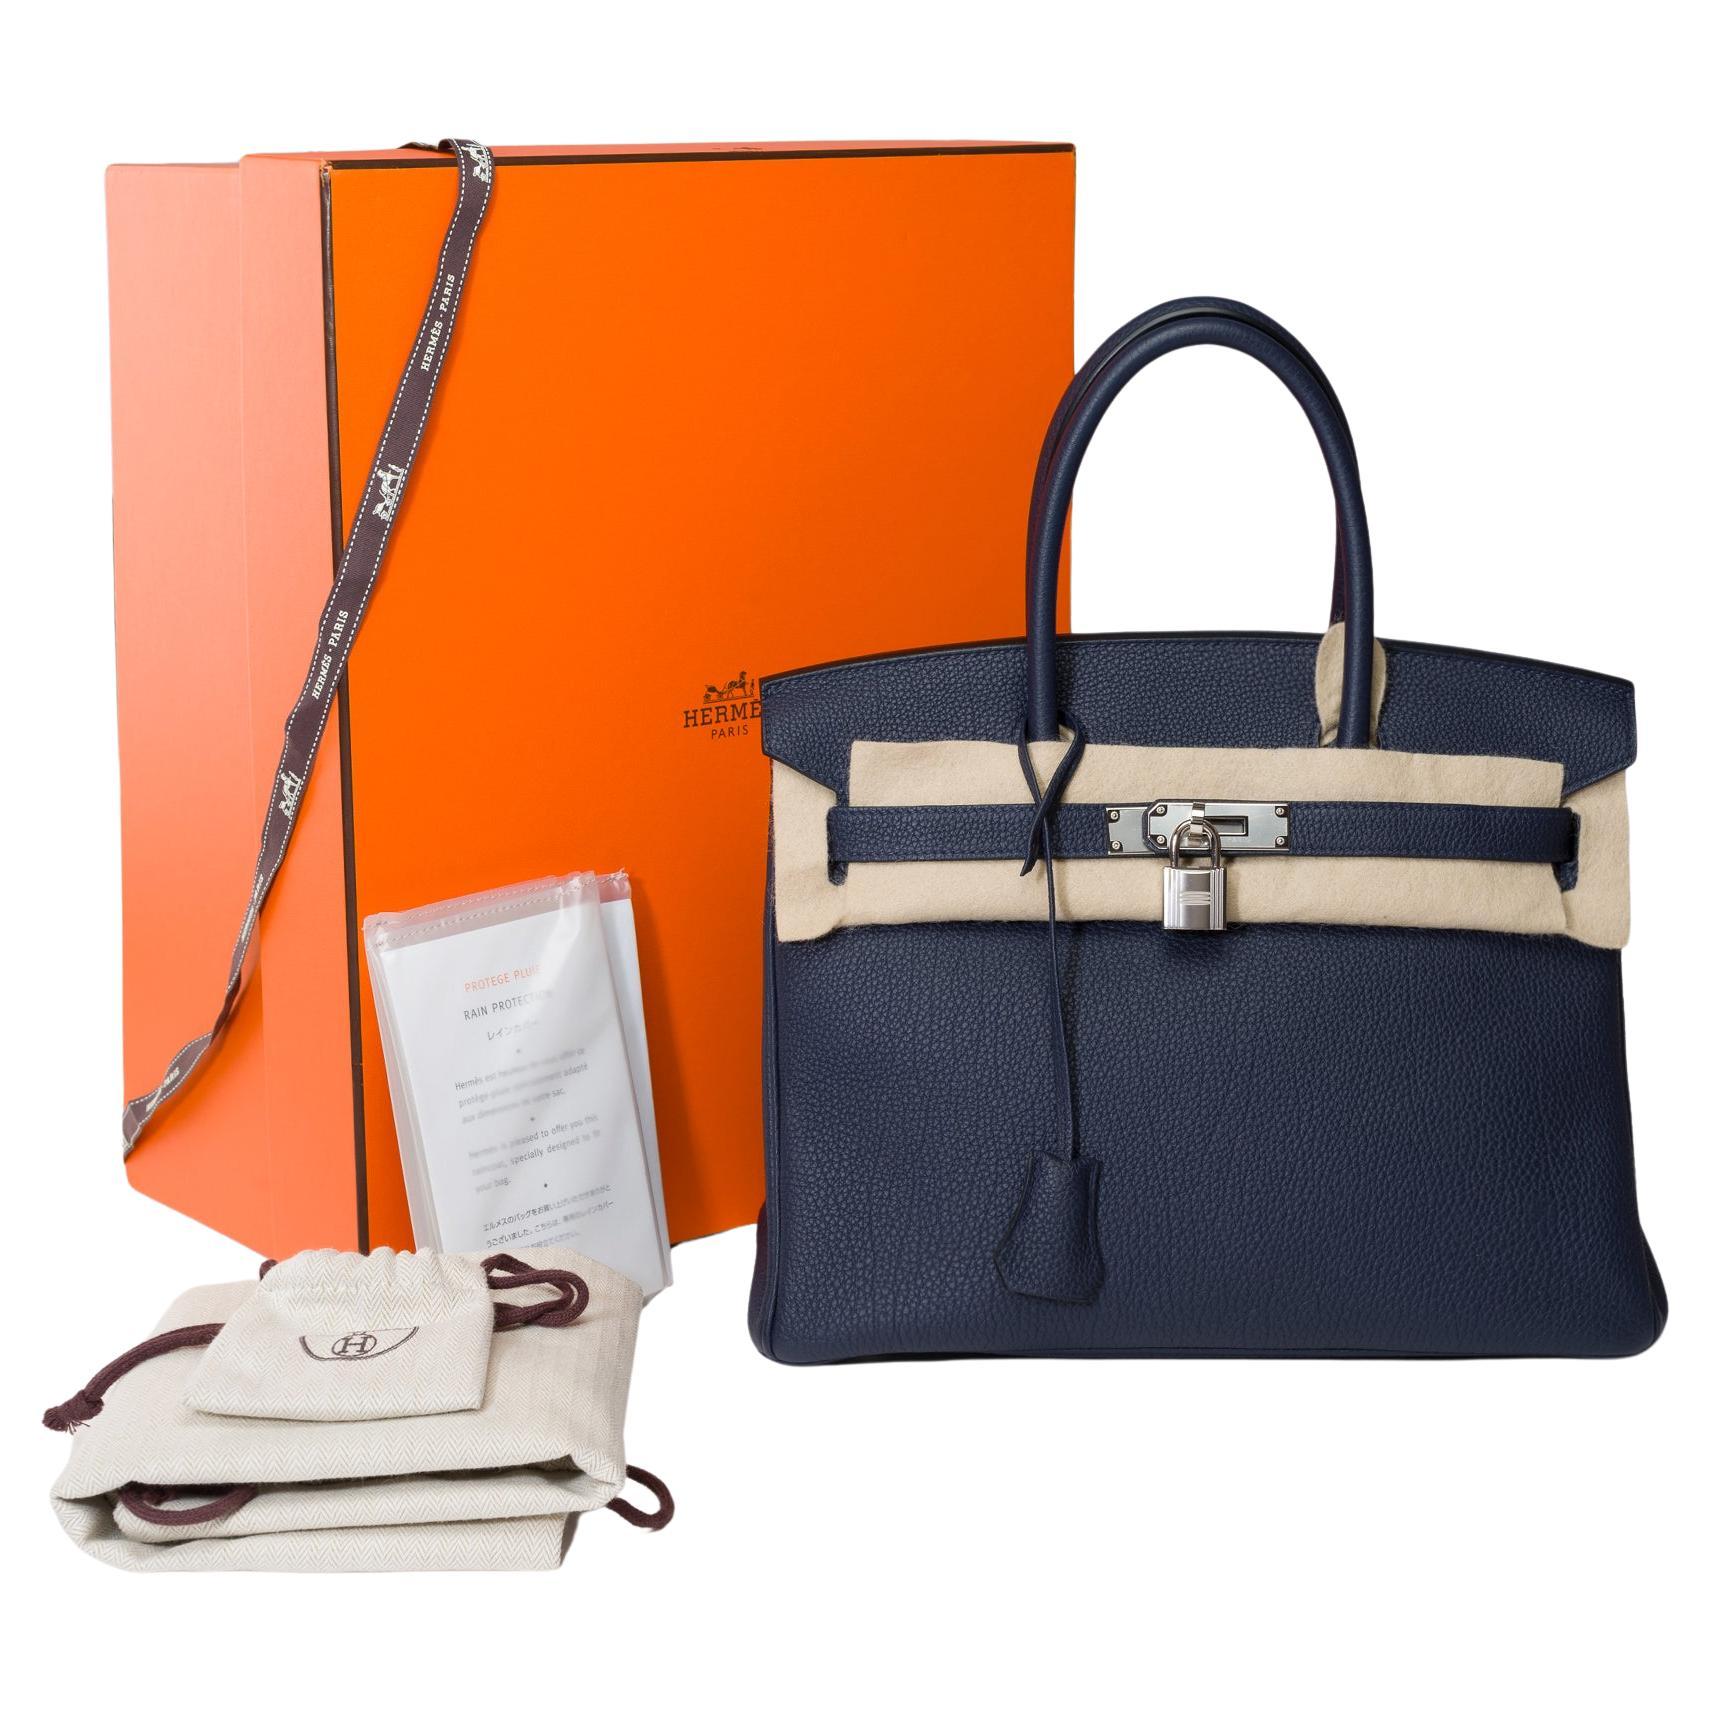 Hermes Birkin 30 handbag in Bleu nuit Togo leather, SHW For Sale